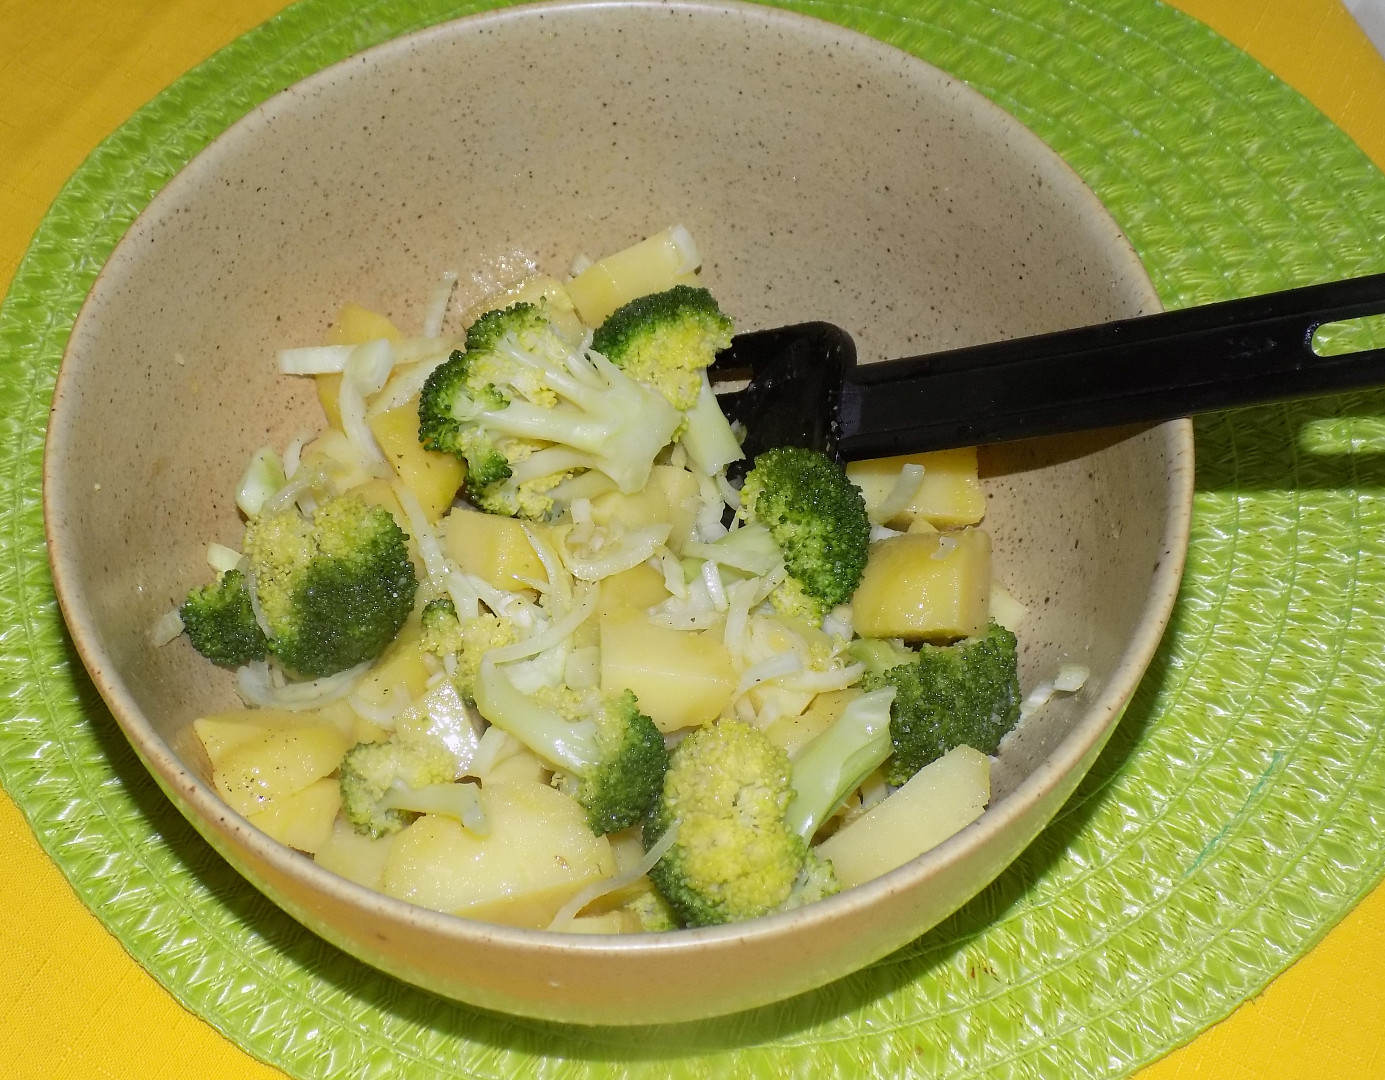 Teplý brokolicový salát